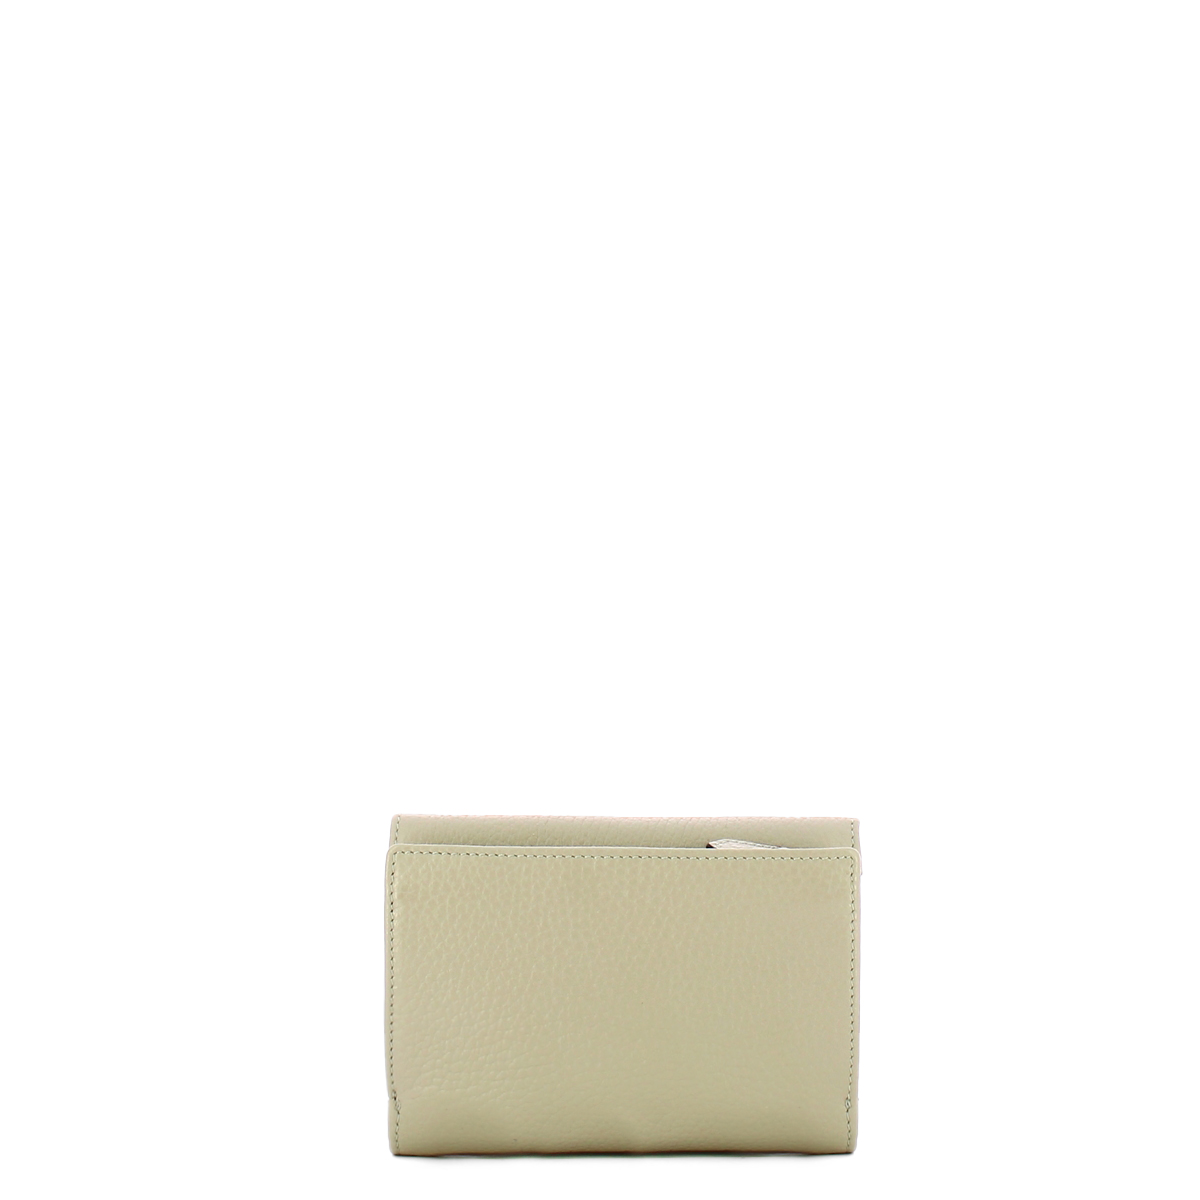 Armonia Silice Medium Wallet with Flap Iuntoo | Bagalier.com